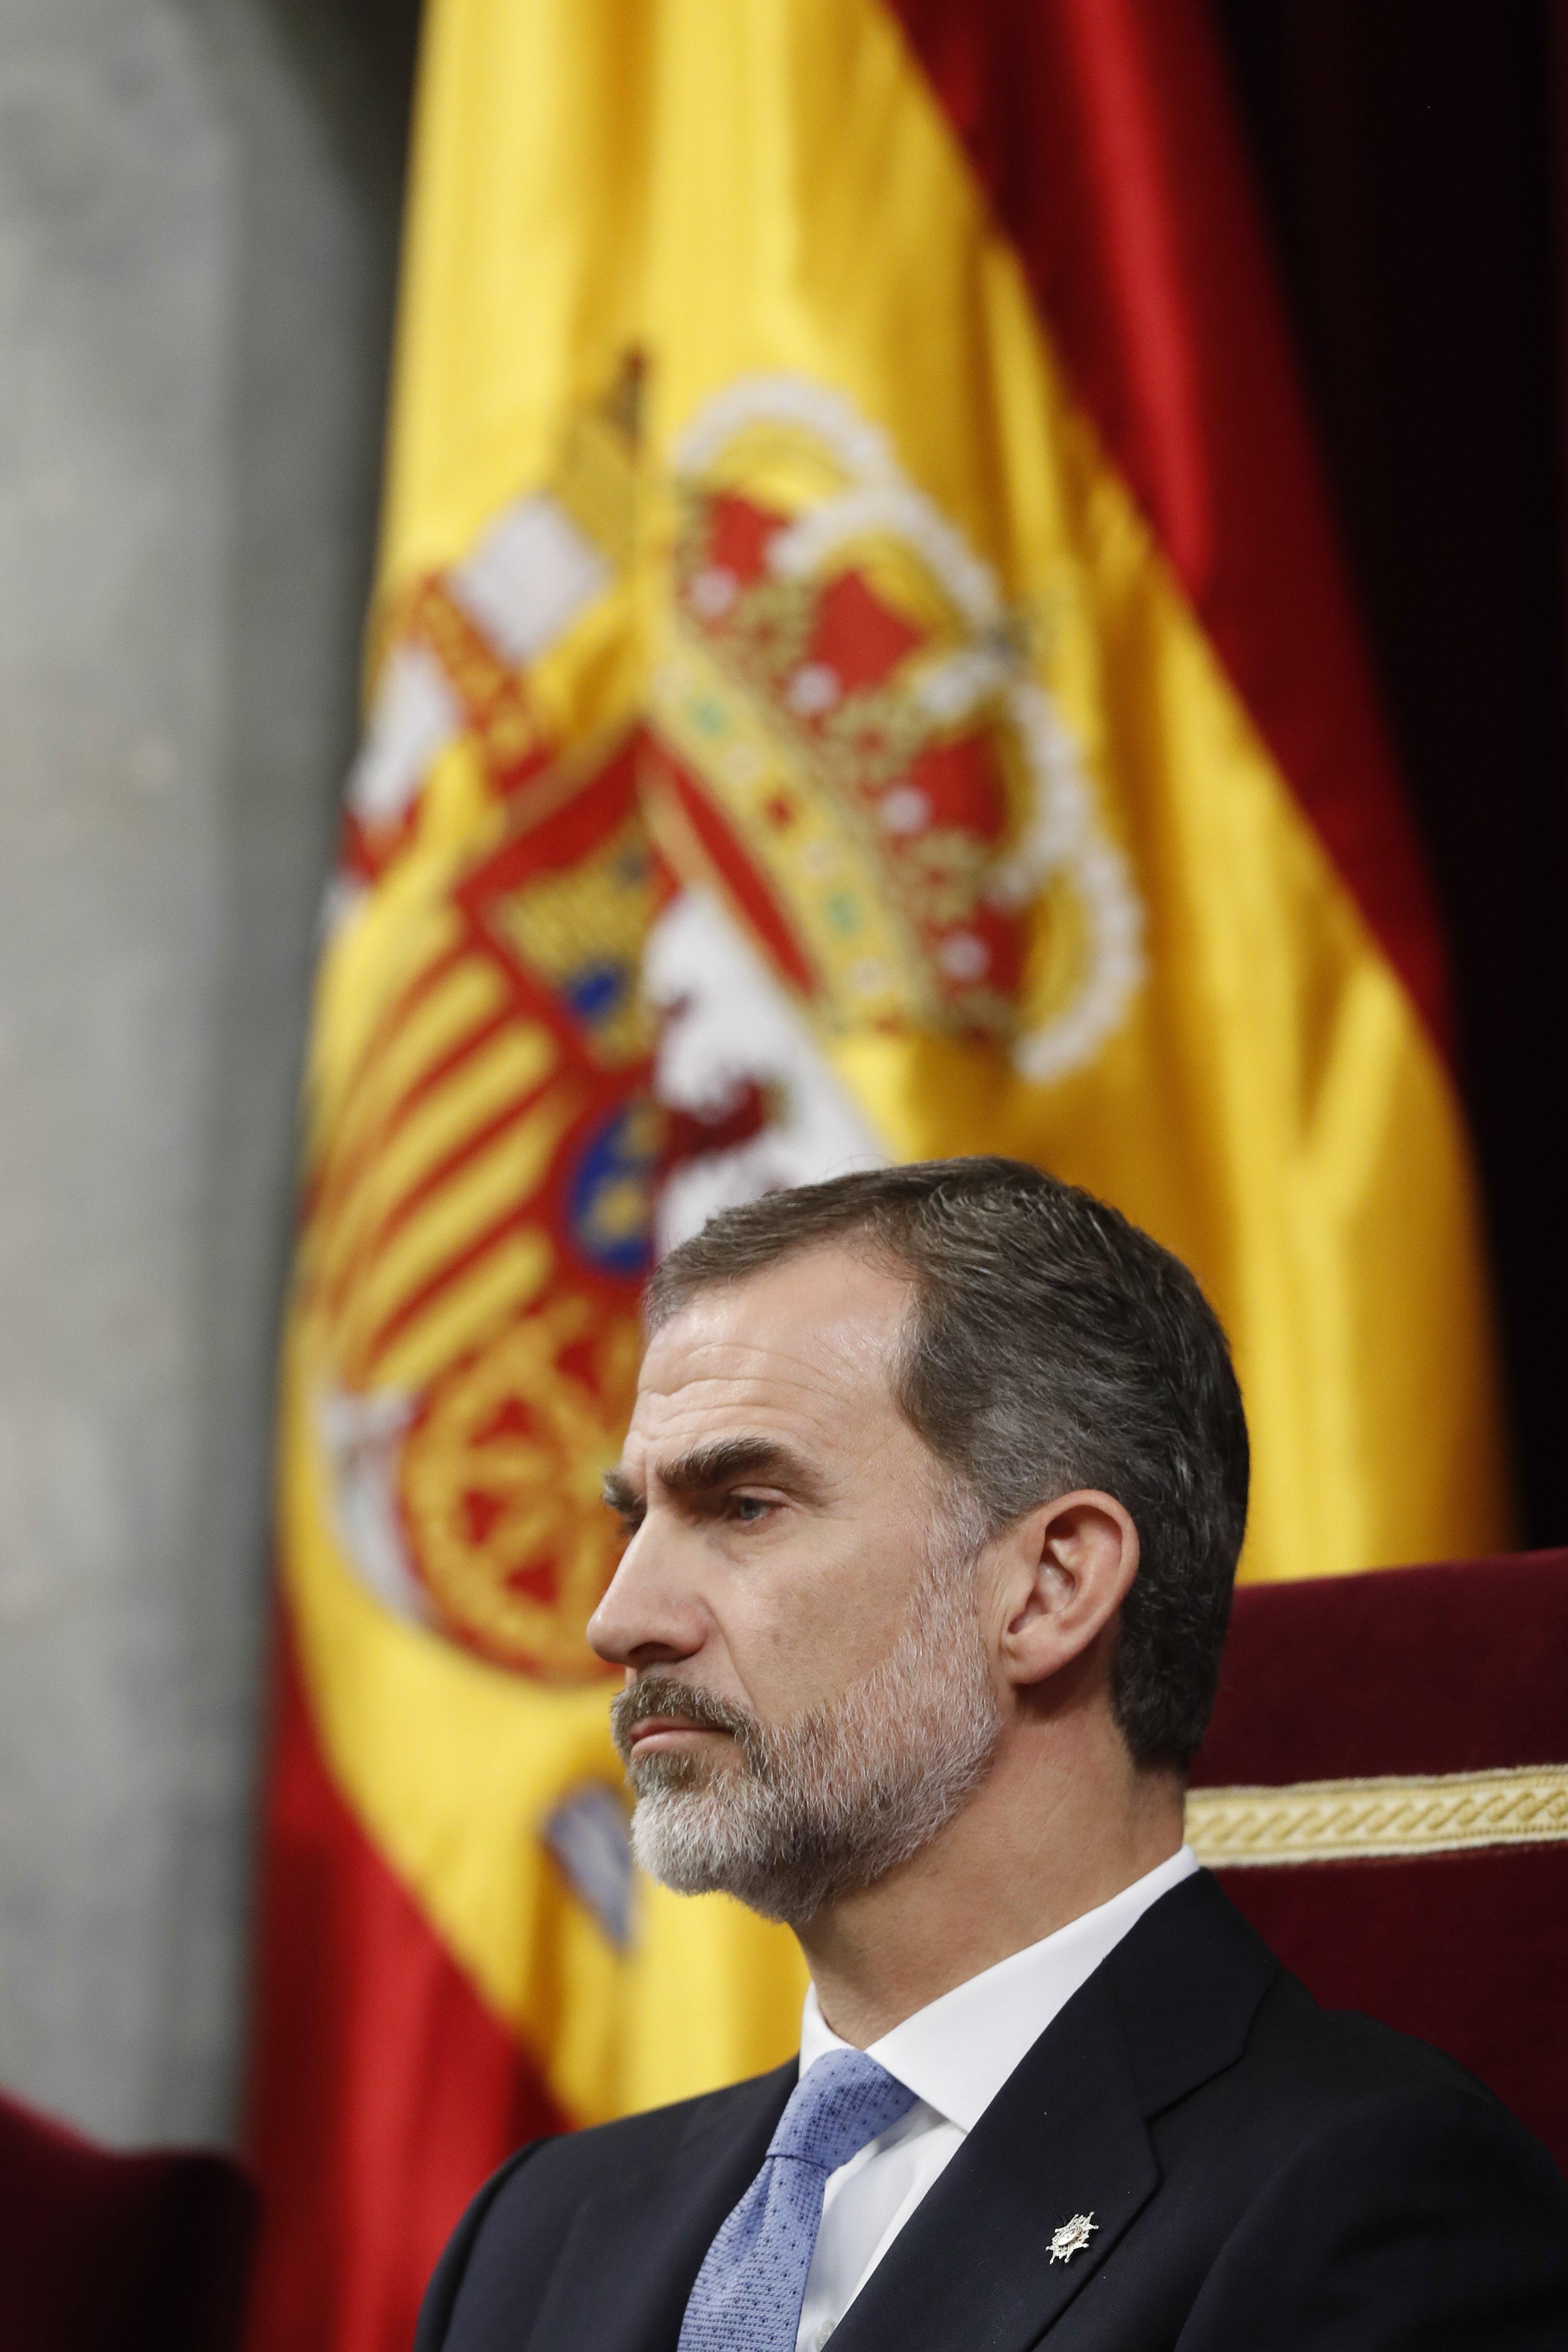 La cançó prohibida: "Que Felipe busque trabajo, no queremos a la monarquía"